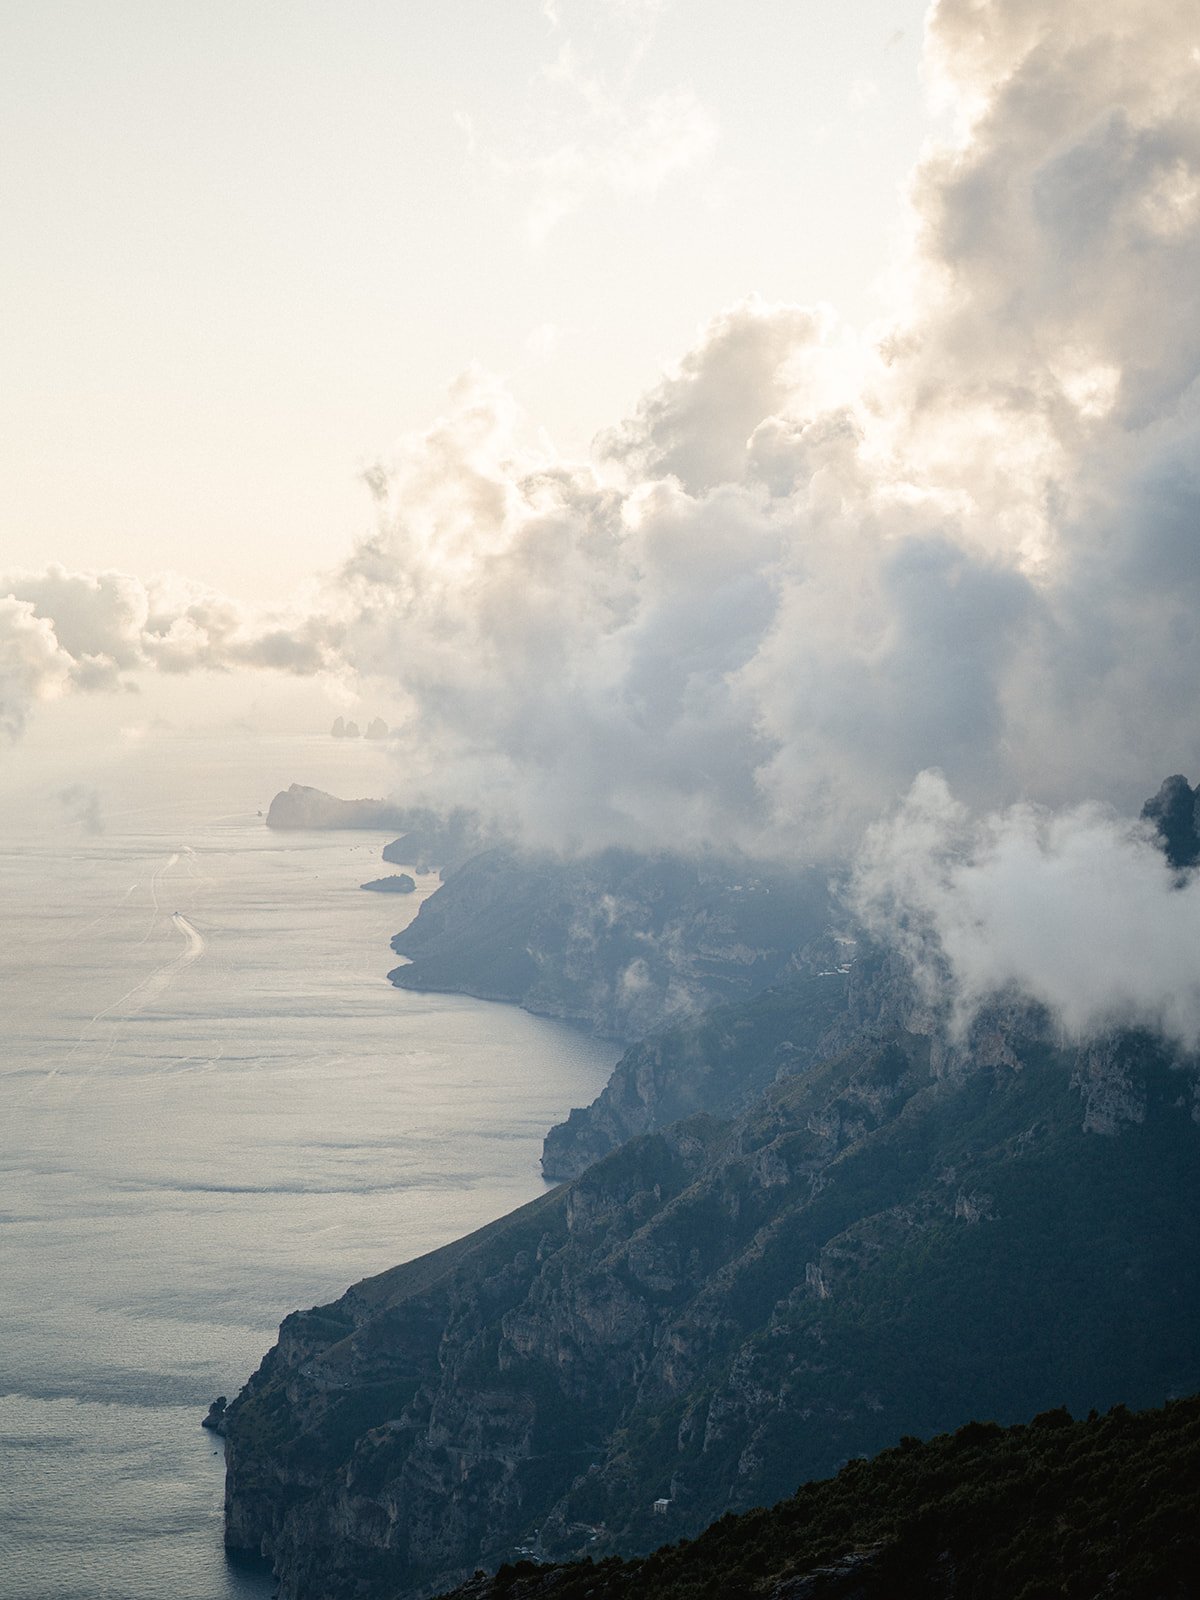 The Path of the Gods in Amalfi Coast